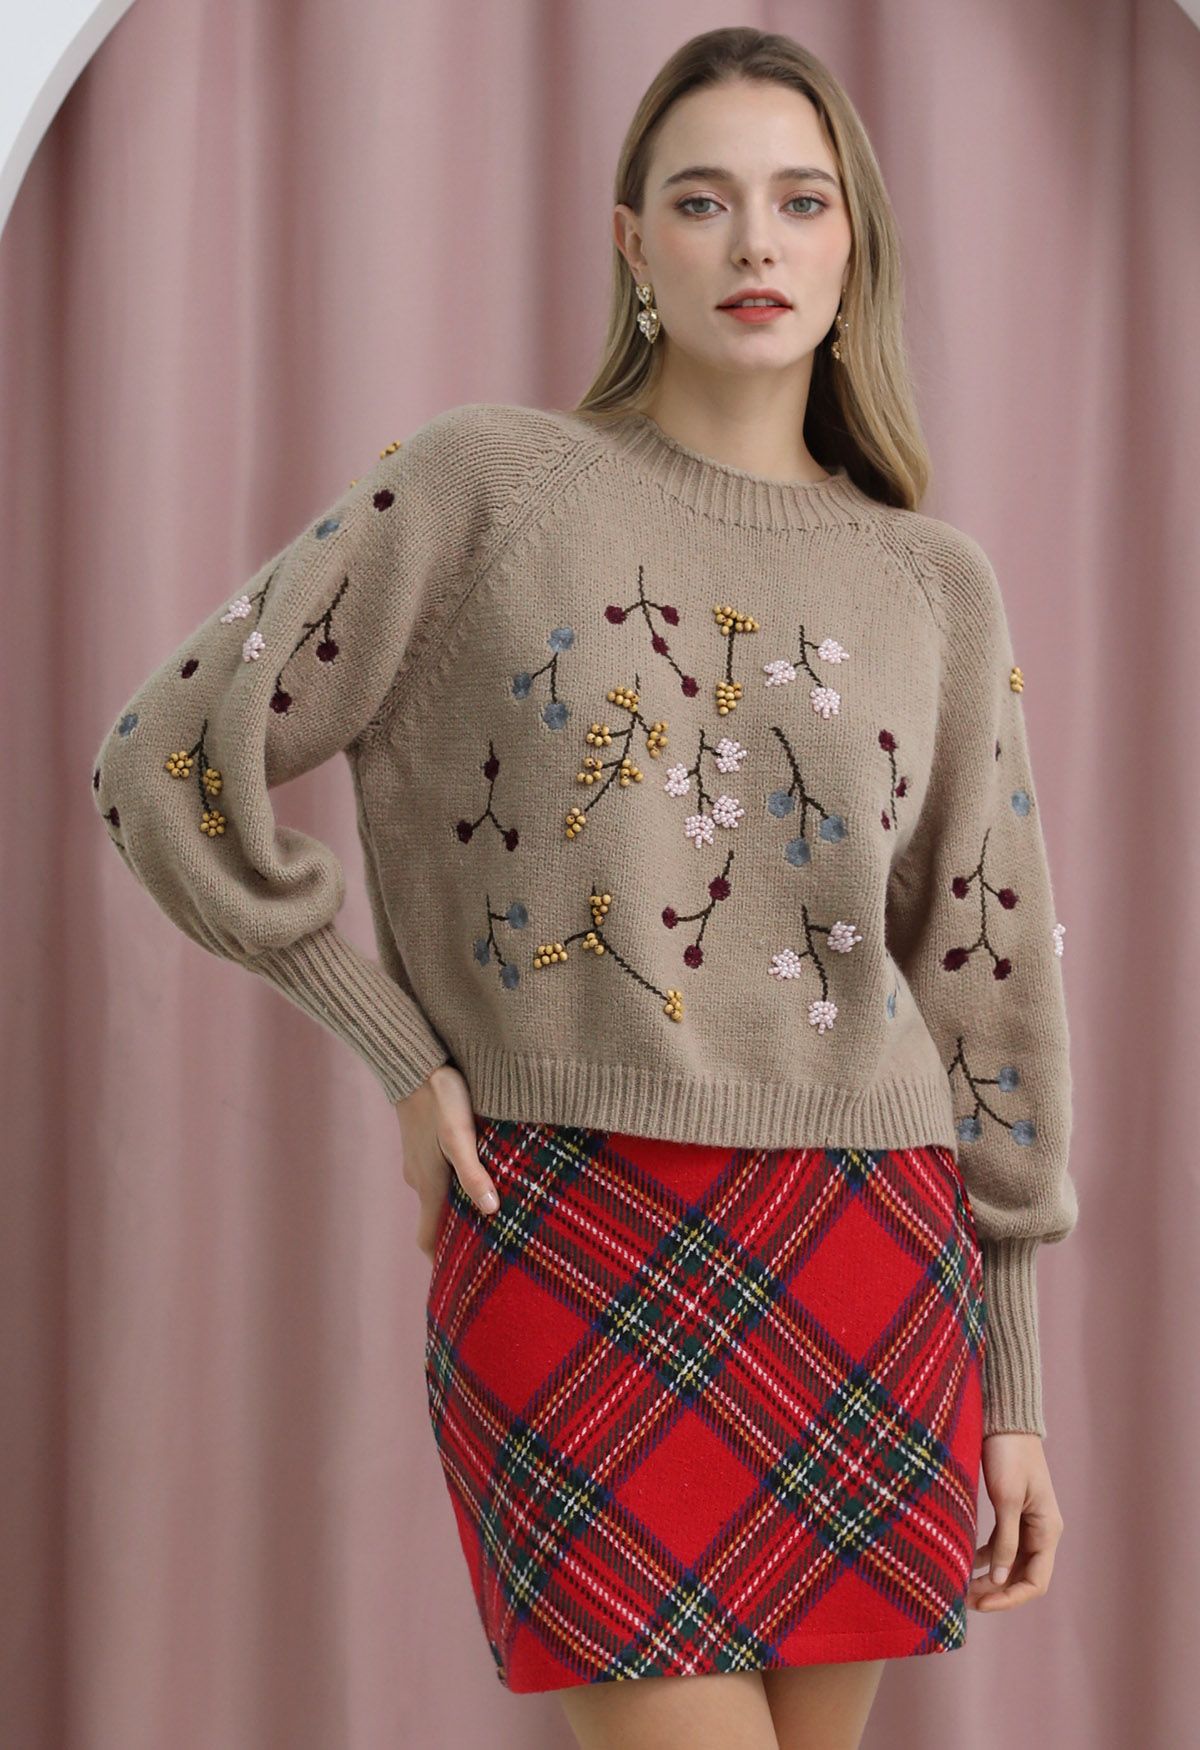 Suéter corto floral bordado con cuentas